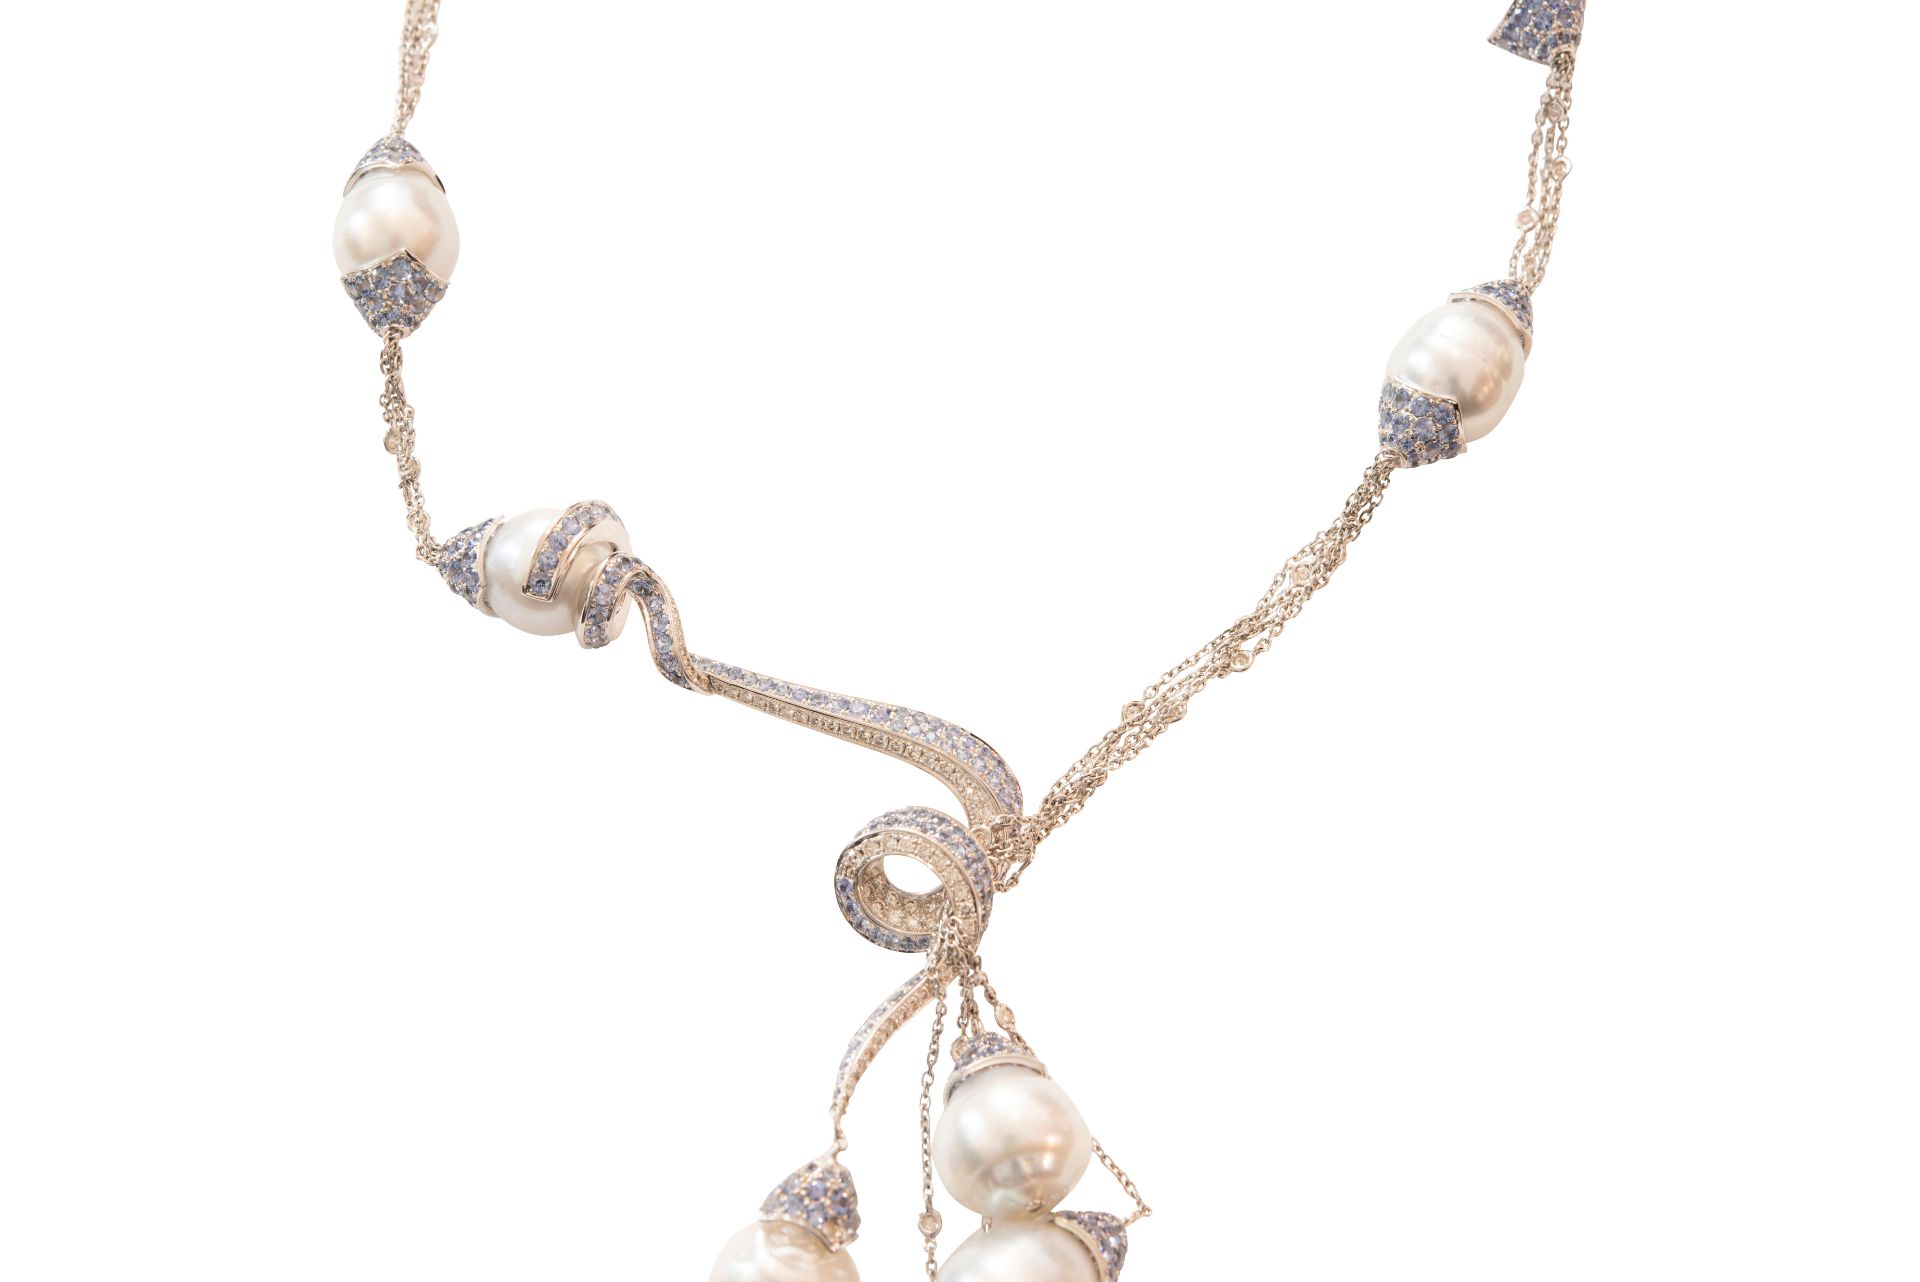 Collier WG mit Brillanten, Saphire, und Perlen|Necklace with Diamonds, Sapphires, & Pearls - Image 3 of 6